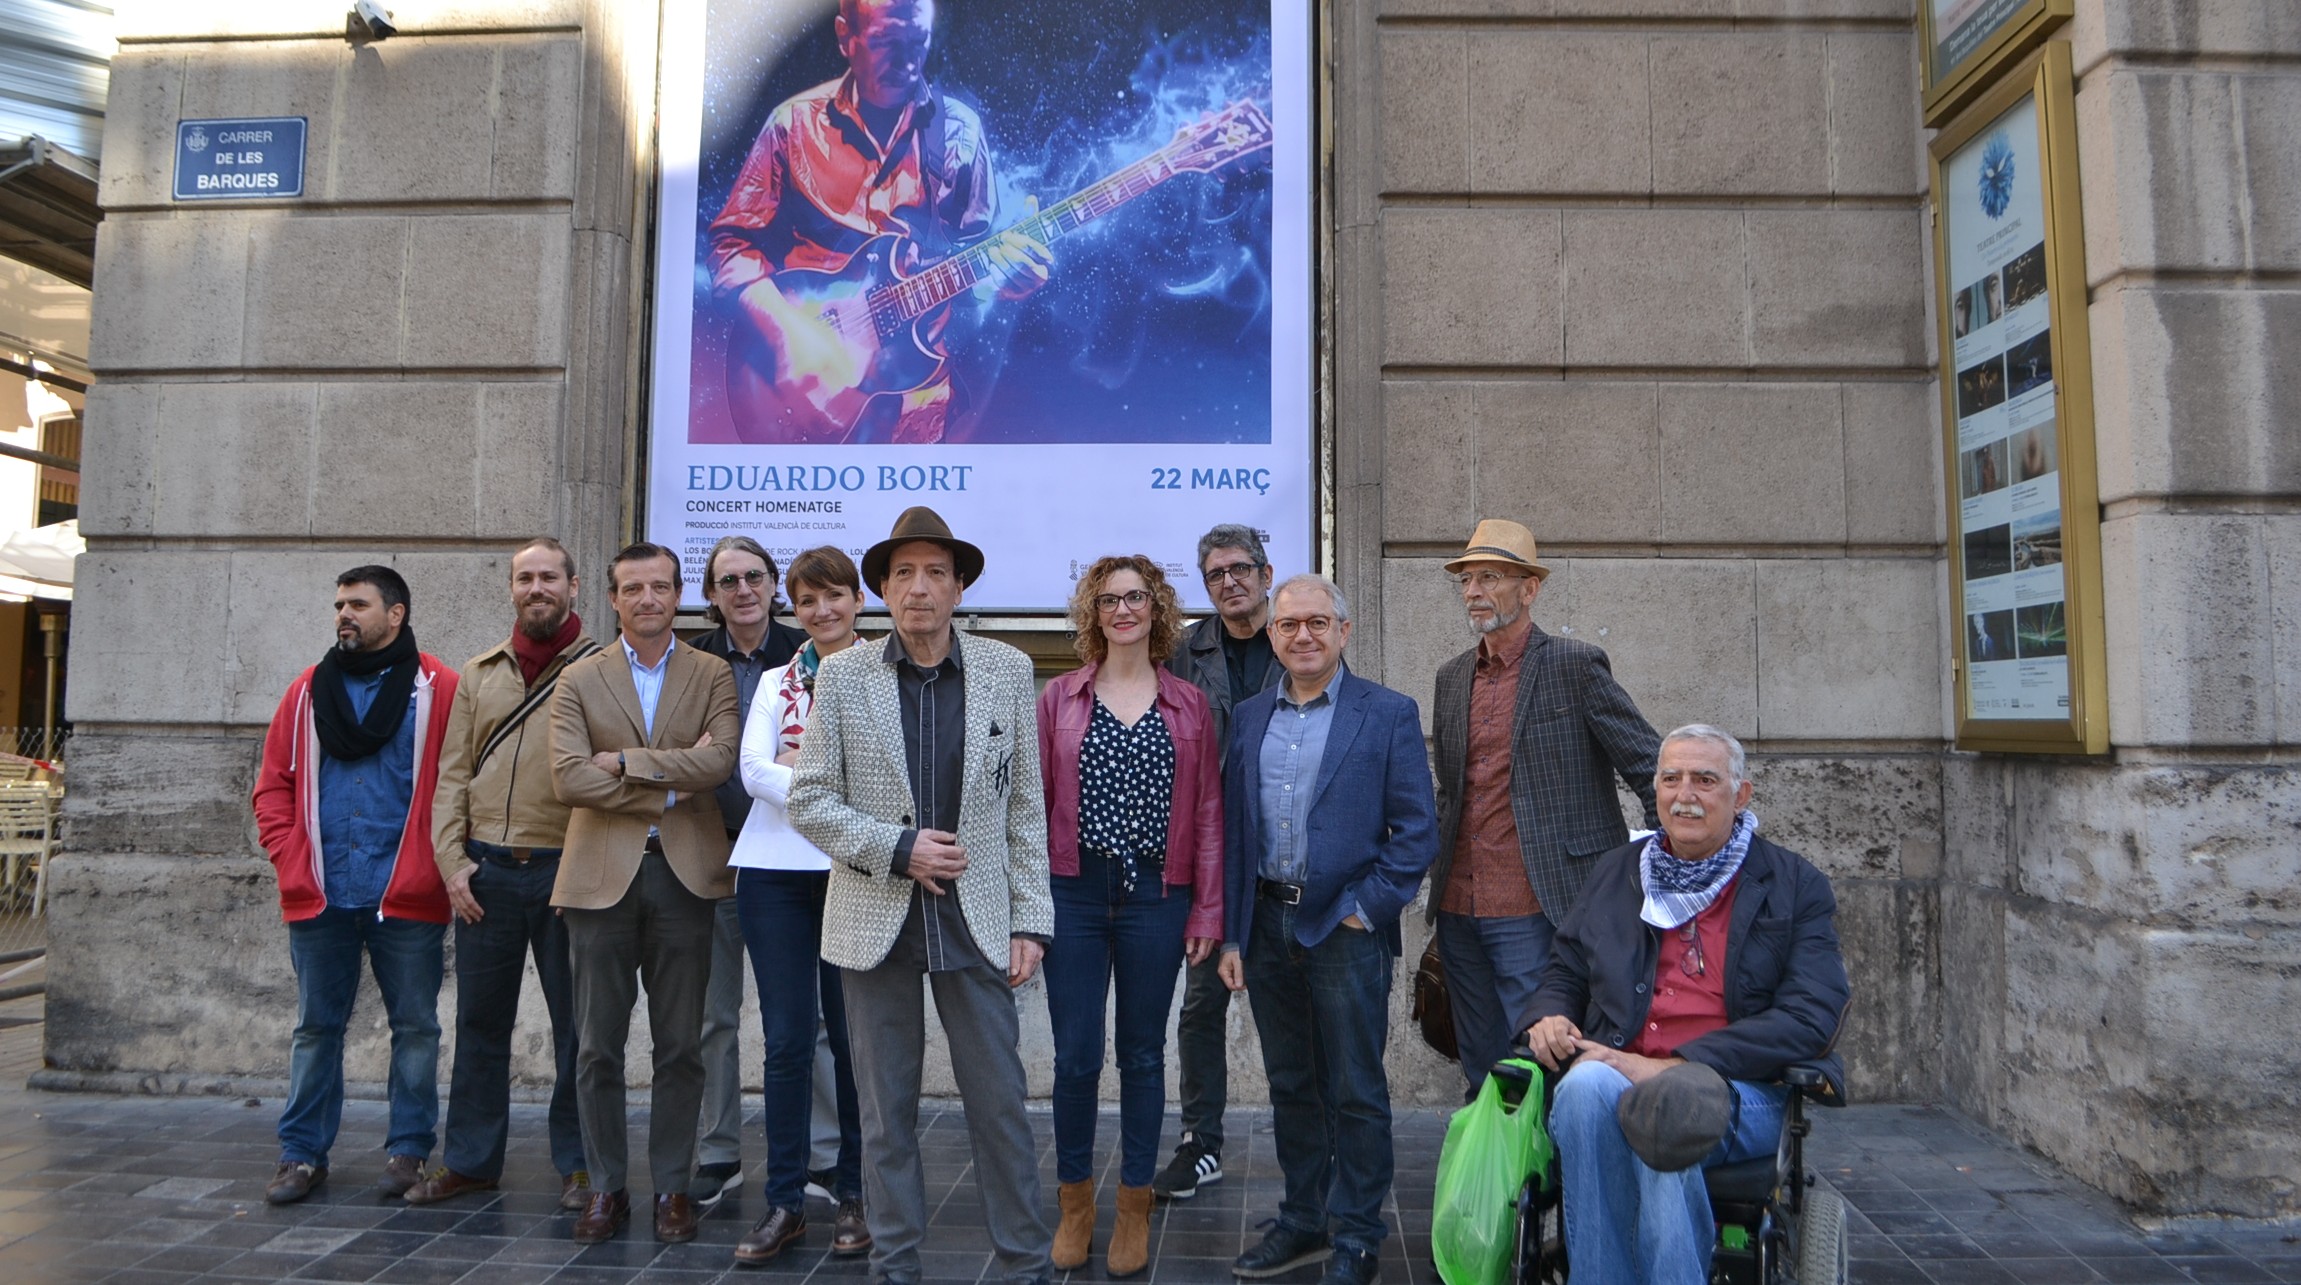 Concierto-homenaje al guitarrista valenciano Eduardo Bort en el Principal